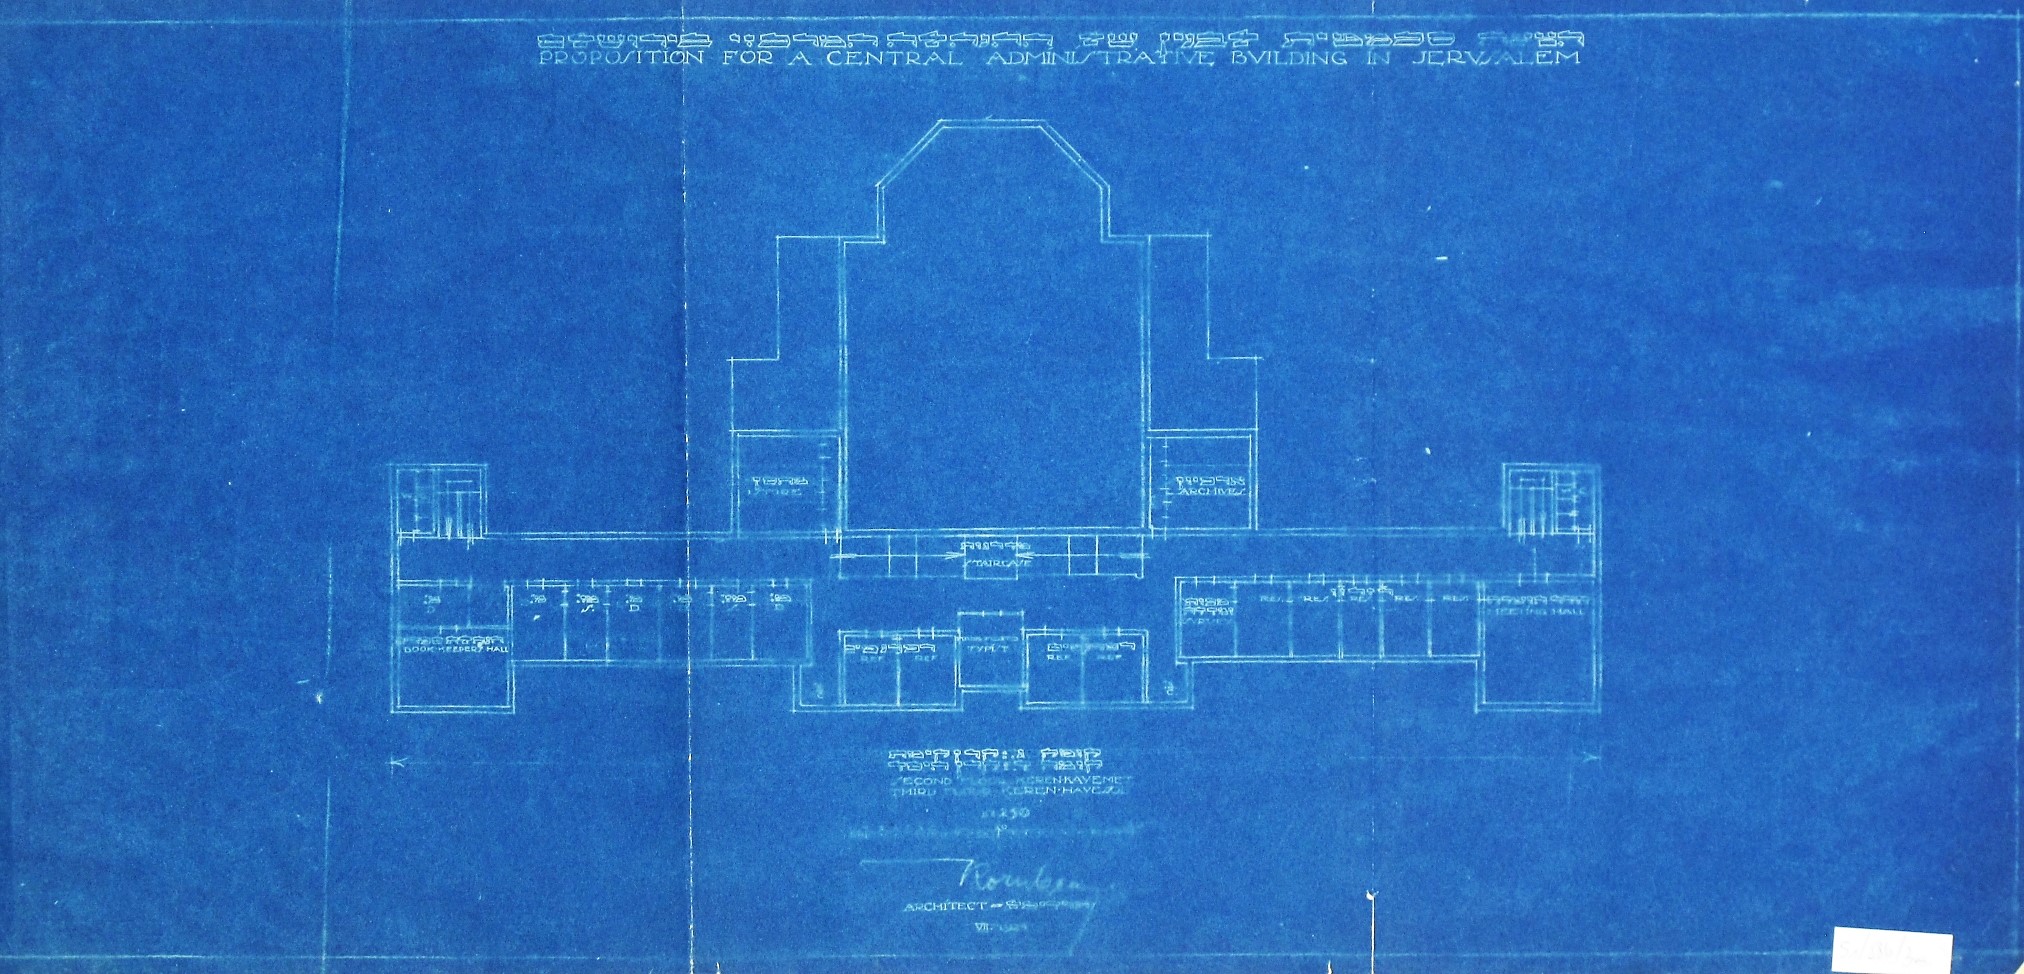 תוכנית עבור בניין המנהלה המרכזי של ההנהלה הציונית בירושלים, פריץ קורנברג, 1924 (S1\586-3m)